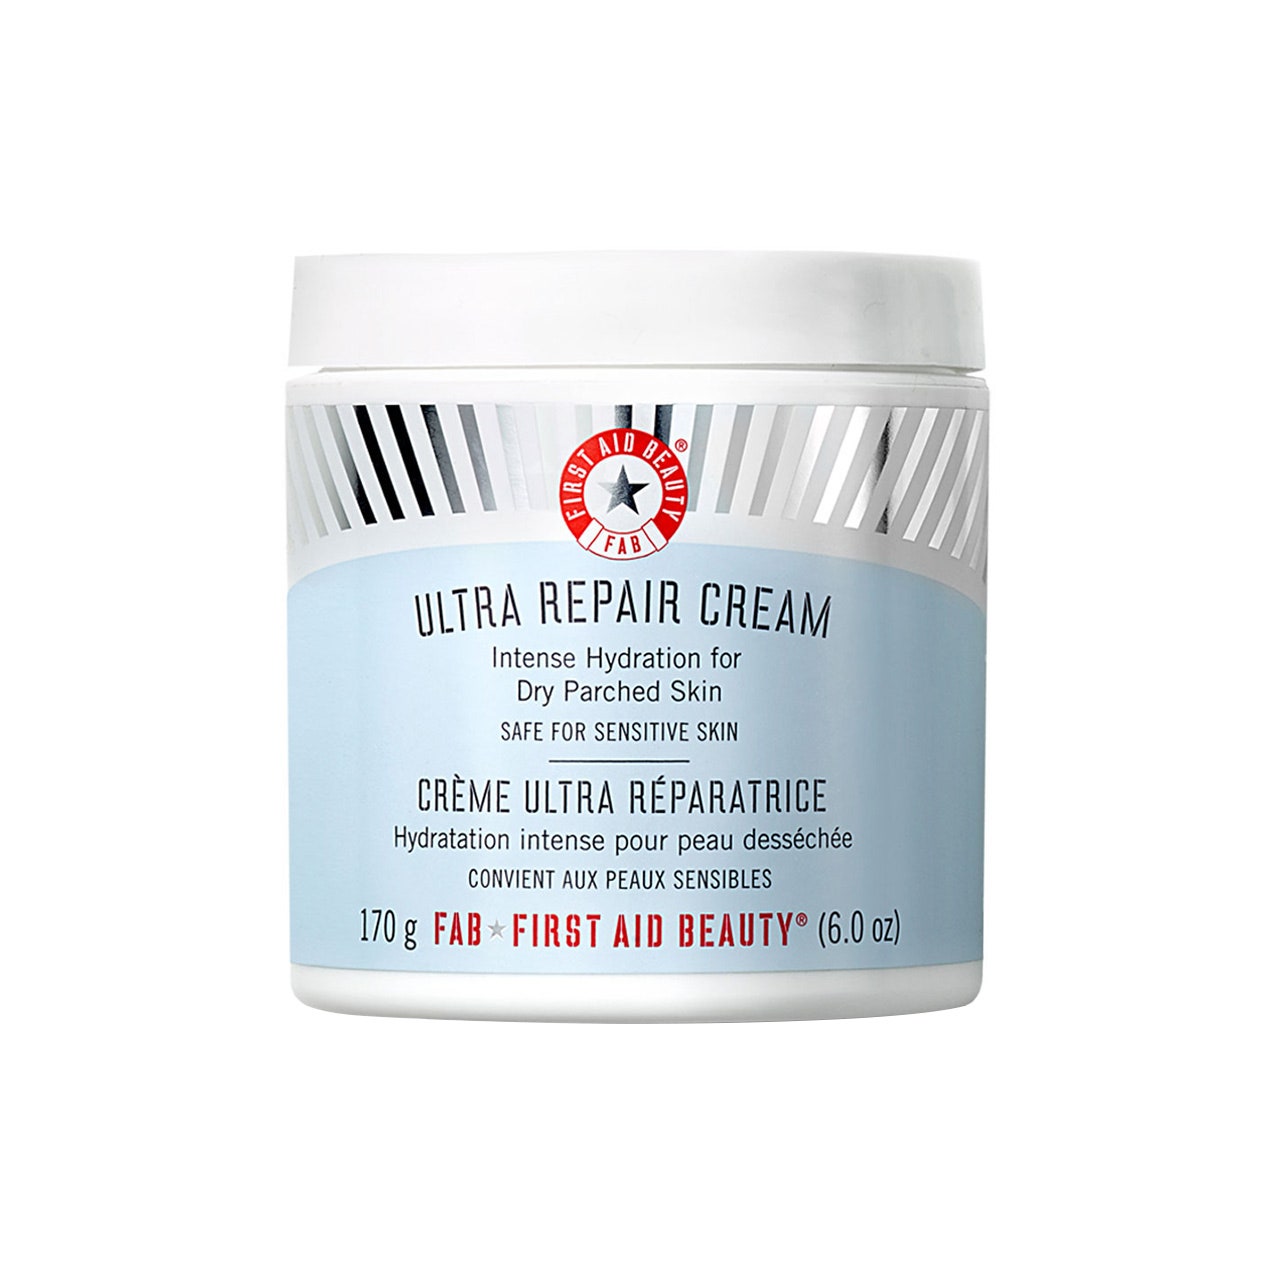 First Aid Ultra Repair Cream- Intense Hydration